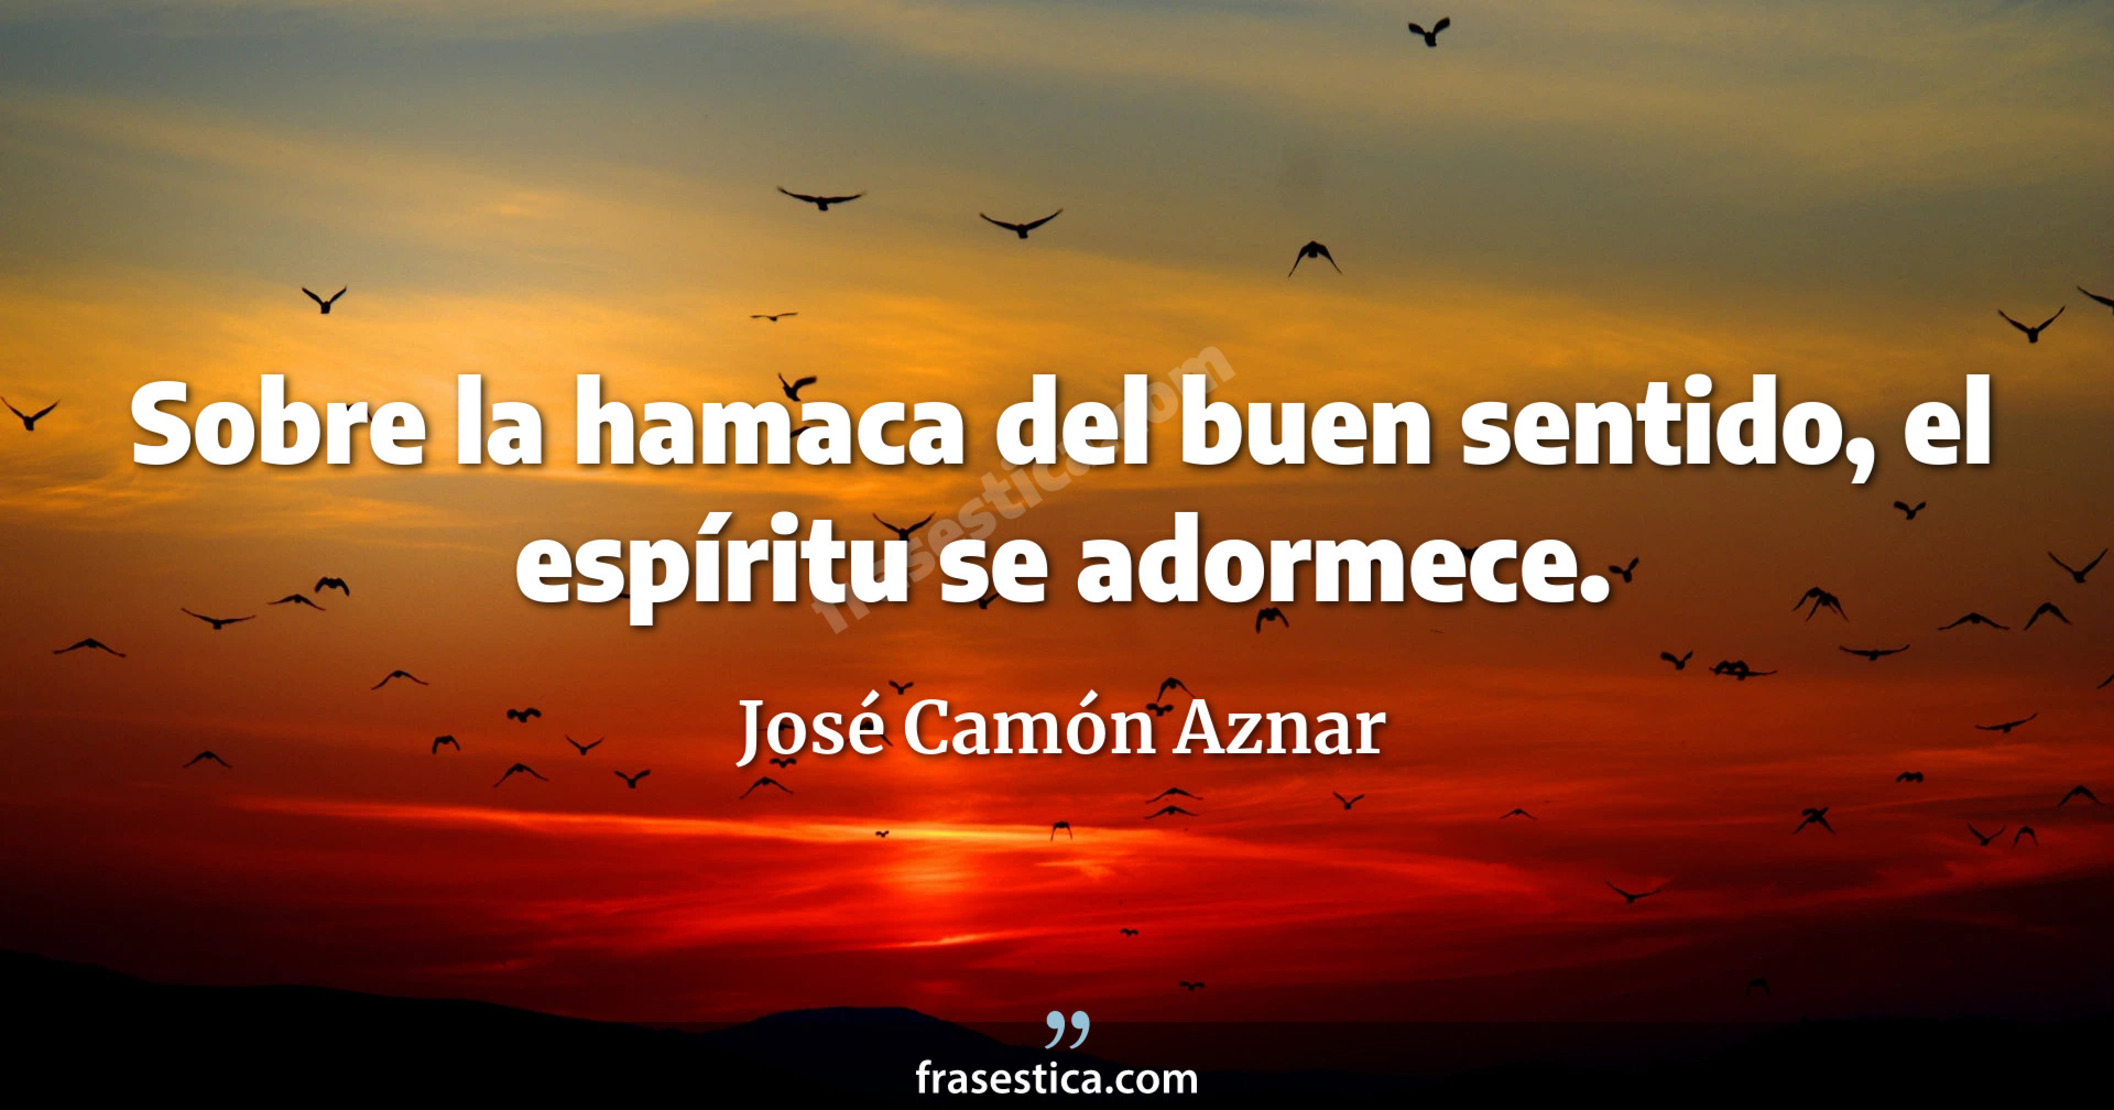 Sobre la hamaca del buen sentido, el espíritu se adormece. - José Camón Aznar